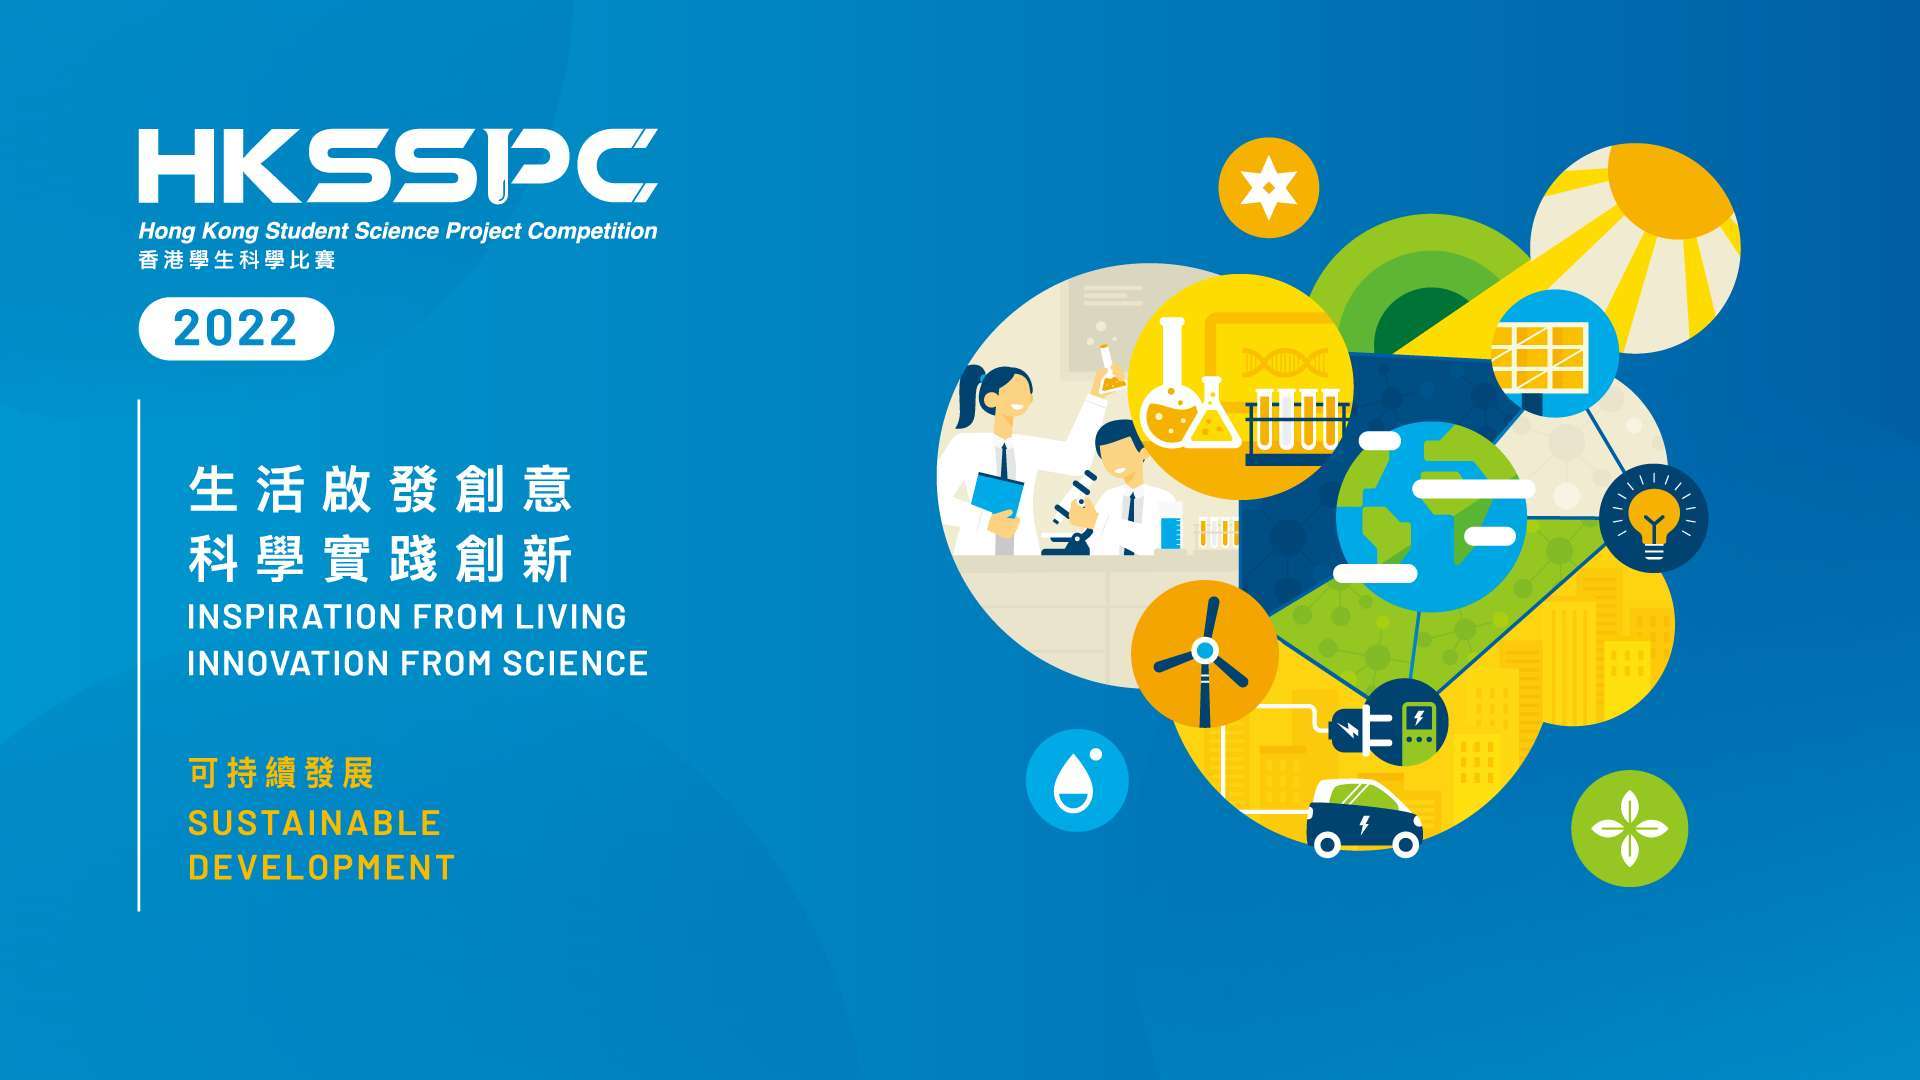 2022 香港學生科學比賽 / Hong Kong Student Science Project Competition 2022